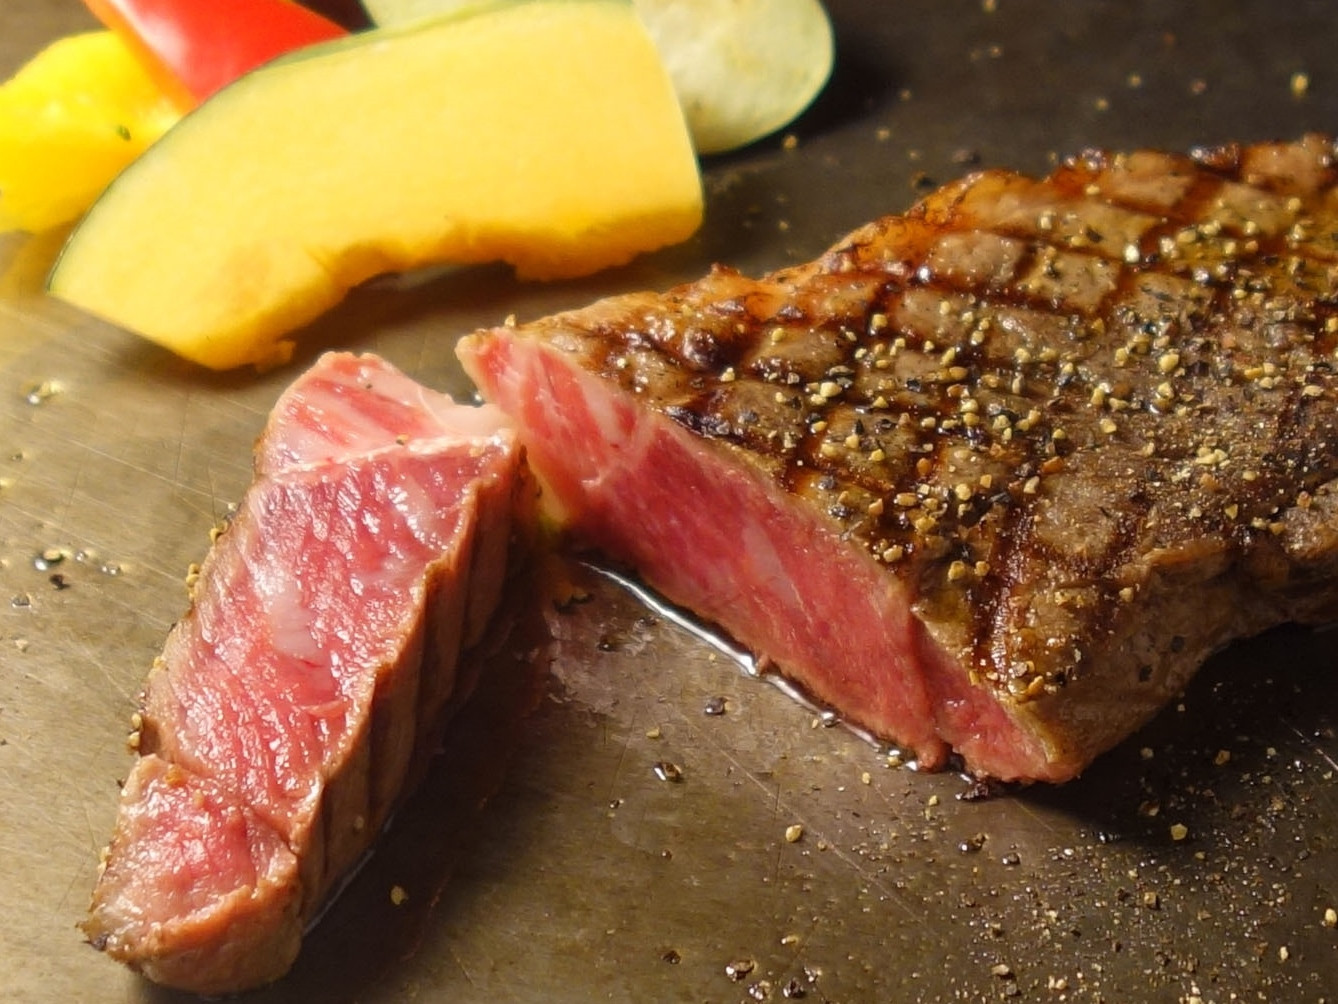 あか牛 100% ハンバーグ と ステーキ ＆ すき焼き セット 熊本県 水上村